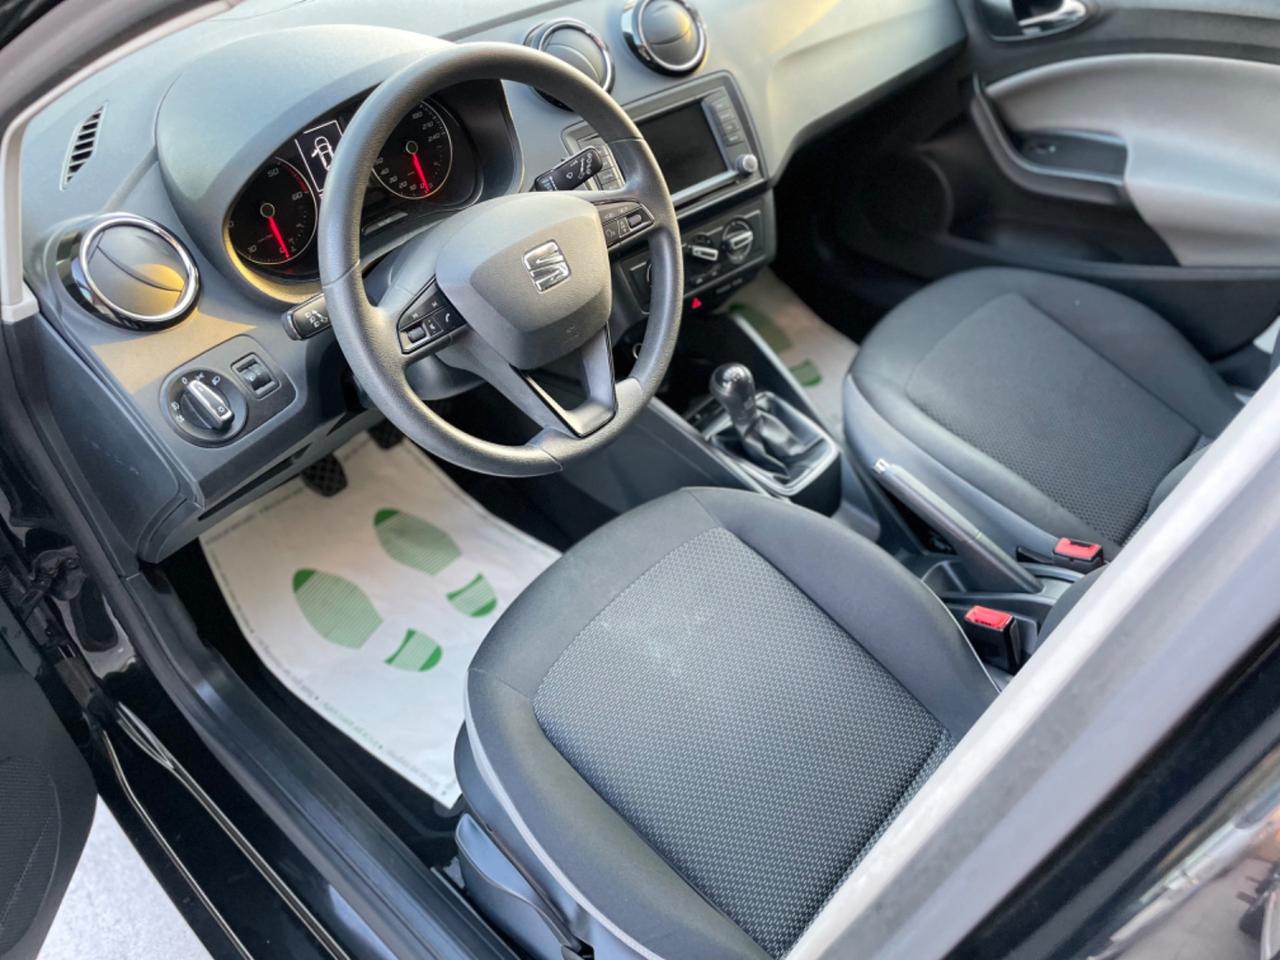 Seat Ibiza 1.4 TDI 90 CV/van 5posti / Business/kmcerfiticati